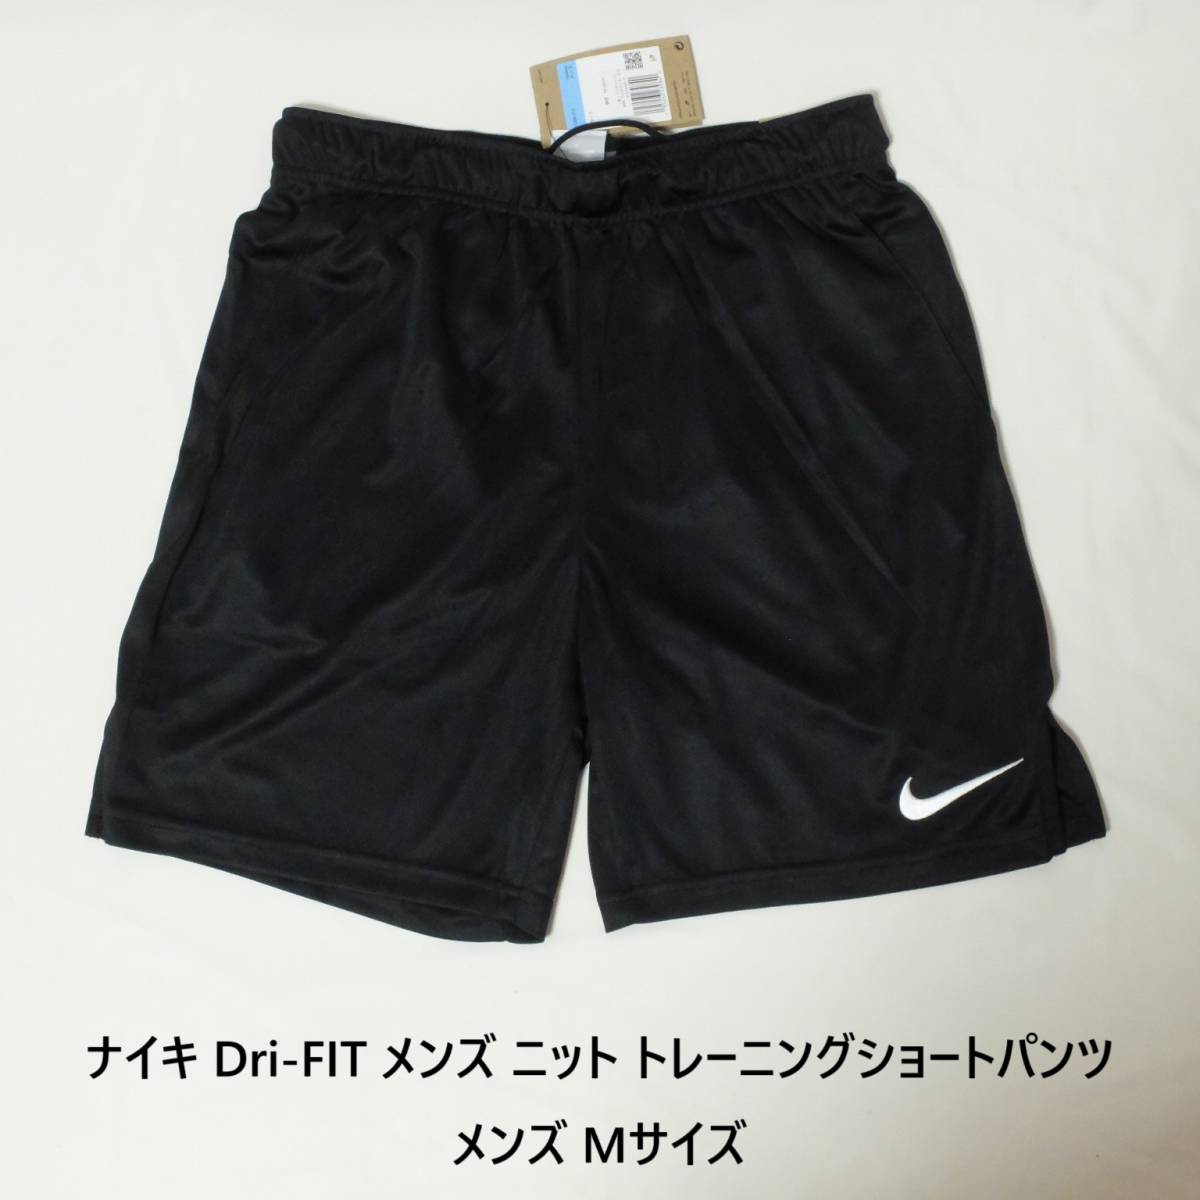 [新品 送料込] メンズM ナイキ Dri-FIT メンズ ニット トレーニングショートパンツ Nike Dri-FIT Men's Knit Training Shorts DD1888 010_画像1